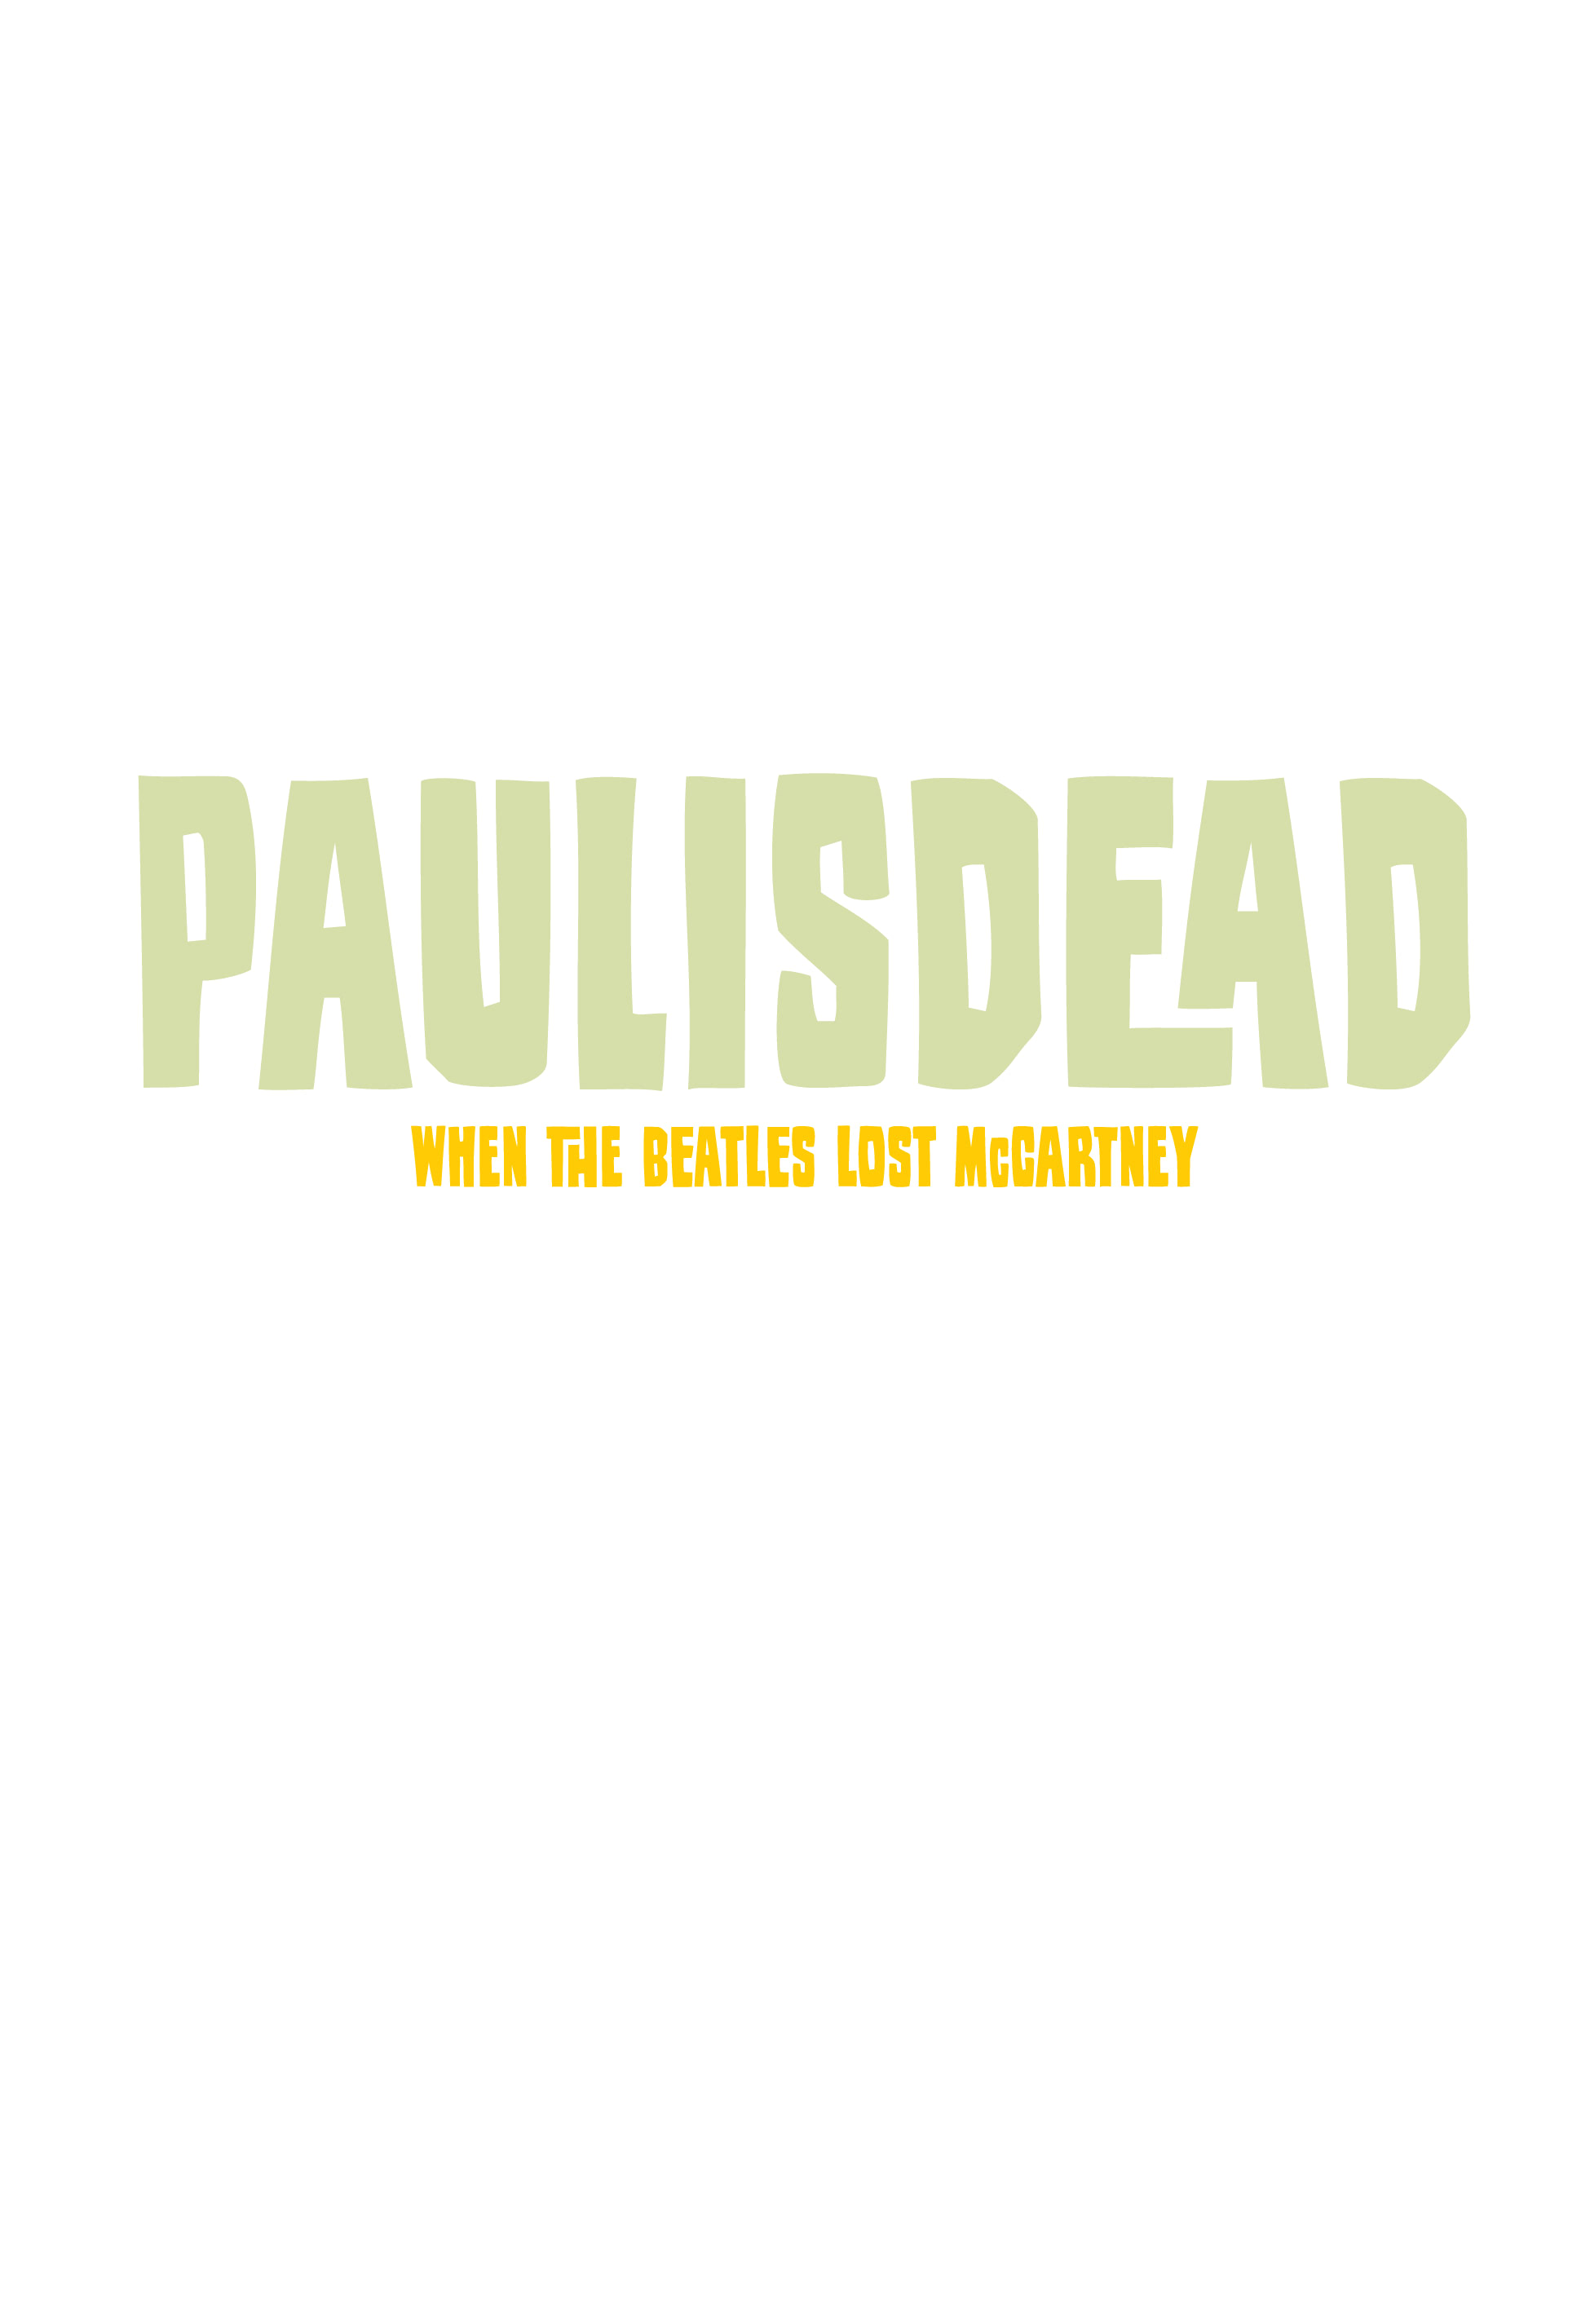 Read online Paul Is Dead comic -  Issue # TPB - 2